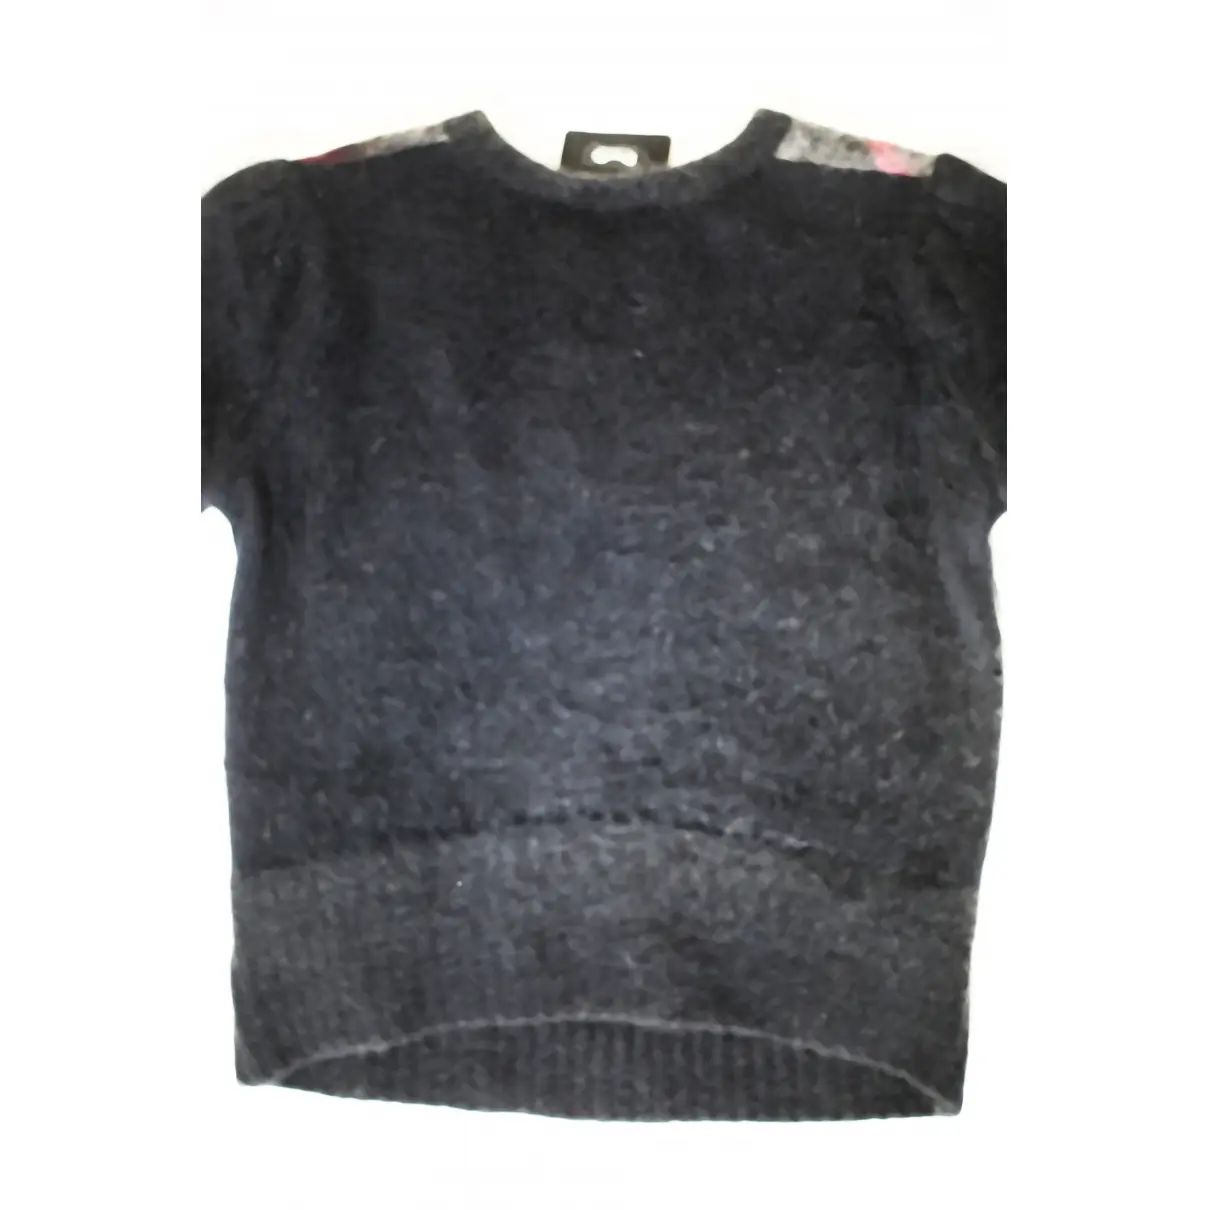 D&G Wool jumper for sale - Vintage